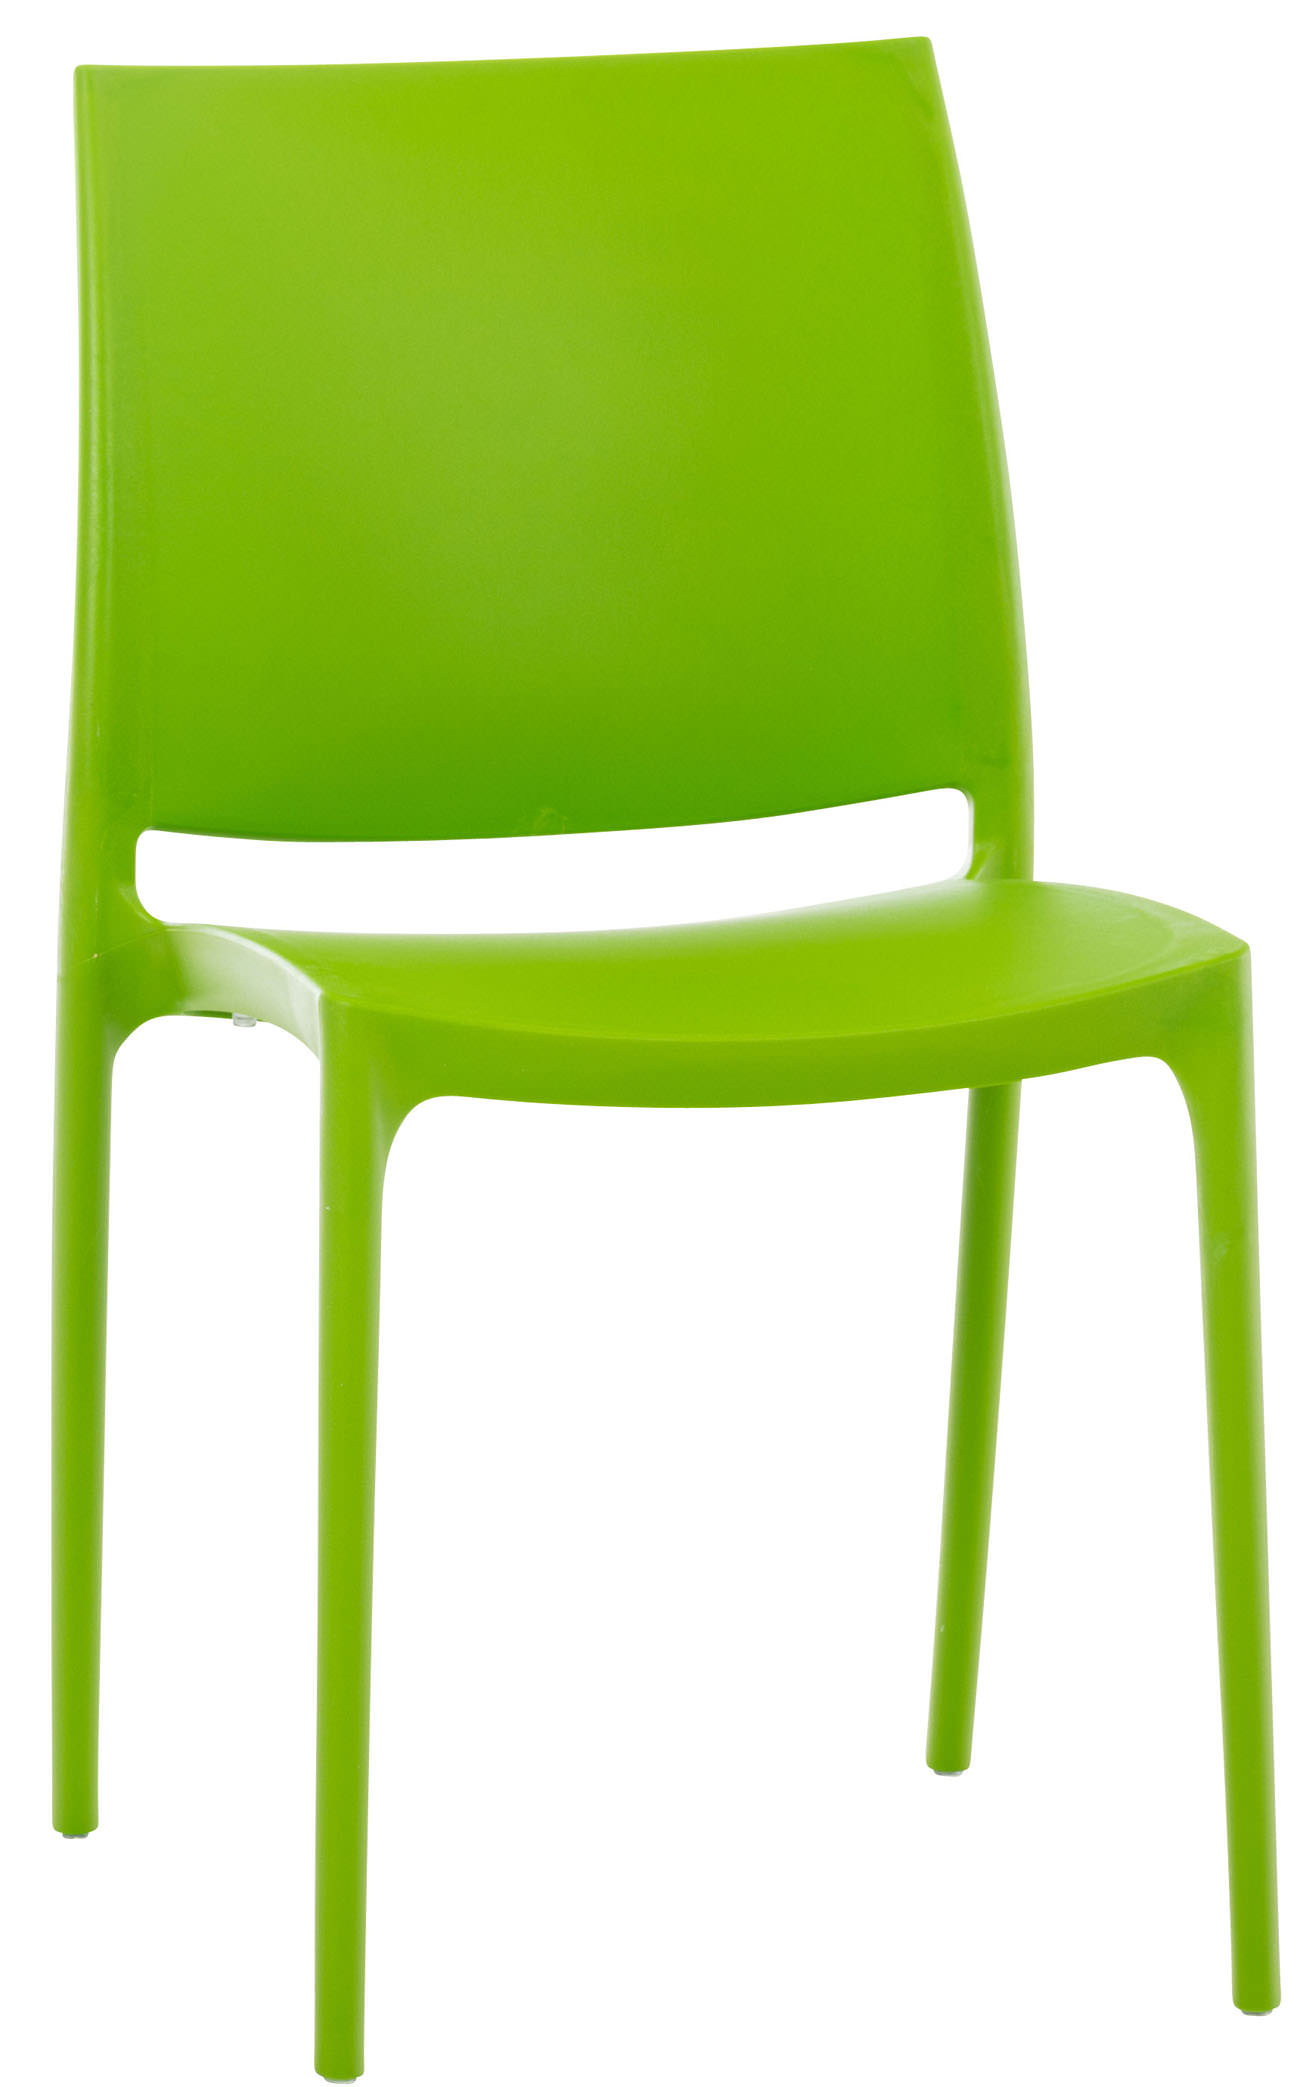 Chaise de jardin empilable résistante aux UV en plastique Vert